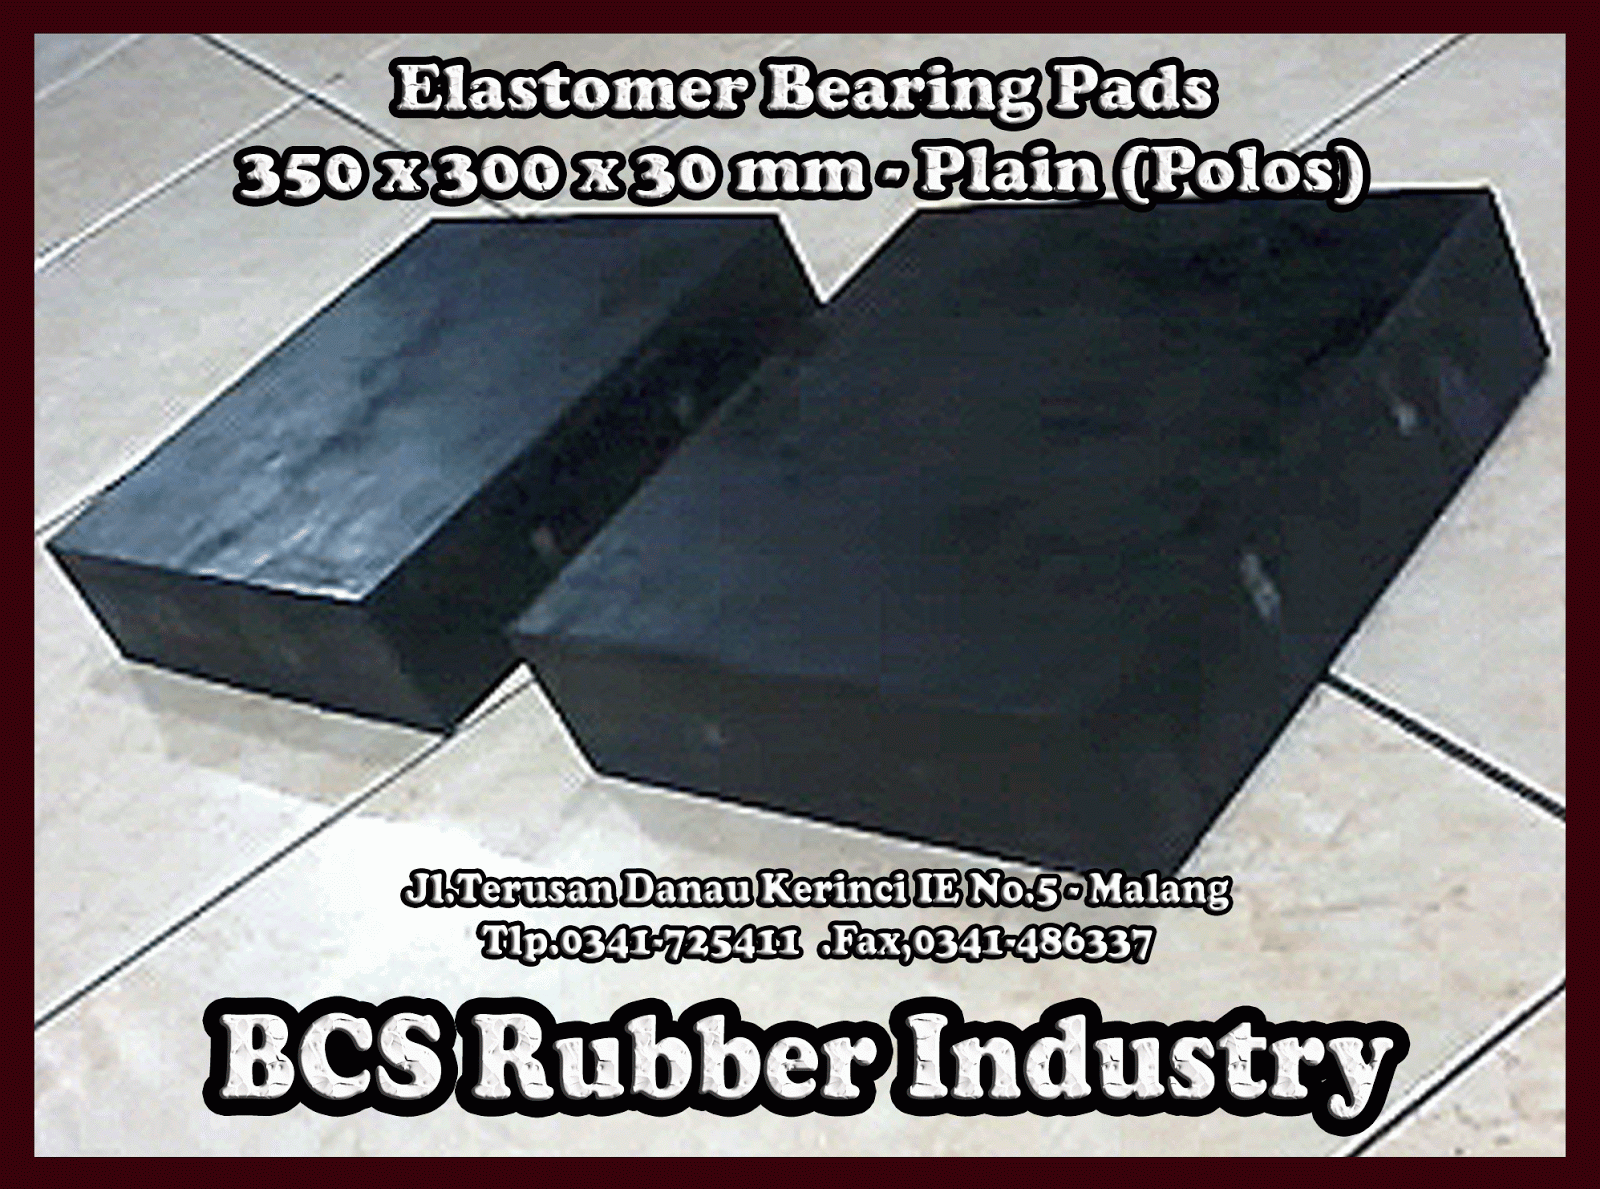 "Jual Karet Elastomer Bearing Pad / Bantalan Jembatan ,Polos, Steel Plate, Seismic Rubber Bearing Pads..